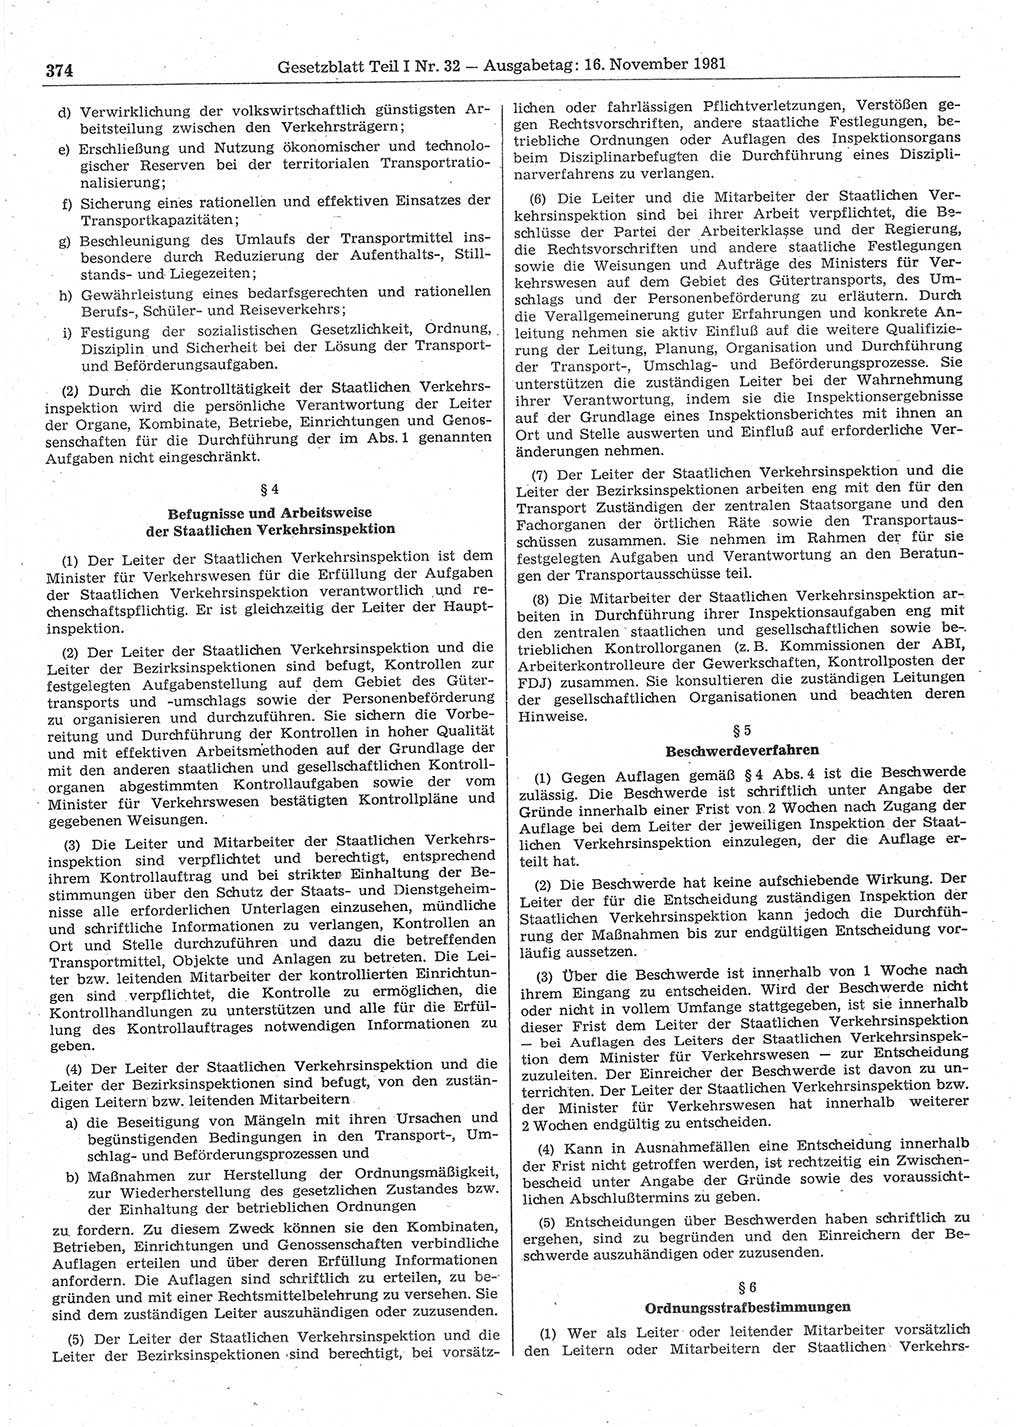 Gesetzblatt (GBl.) der Deutschen Demokratischen Republik (DDR) Teil Ⅰ 1981, Seite 374 (GBl. DDR Ⅰ 1981, S. 374)